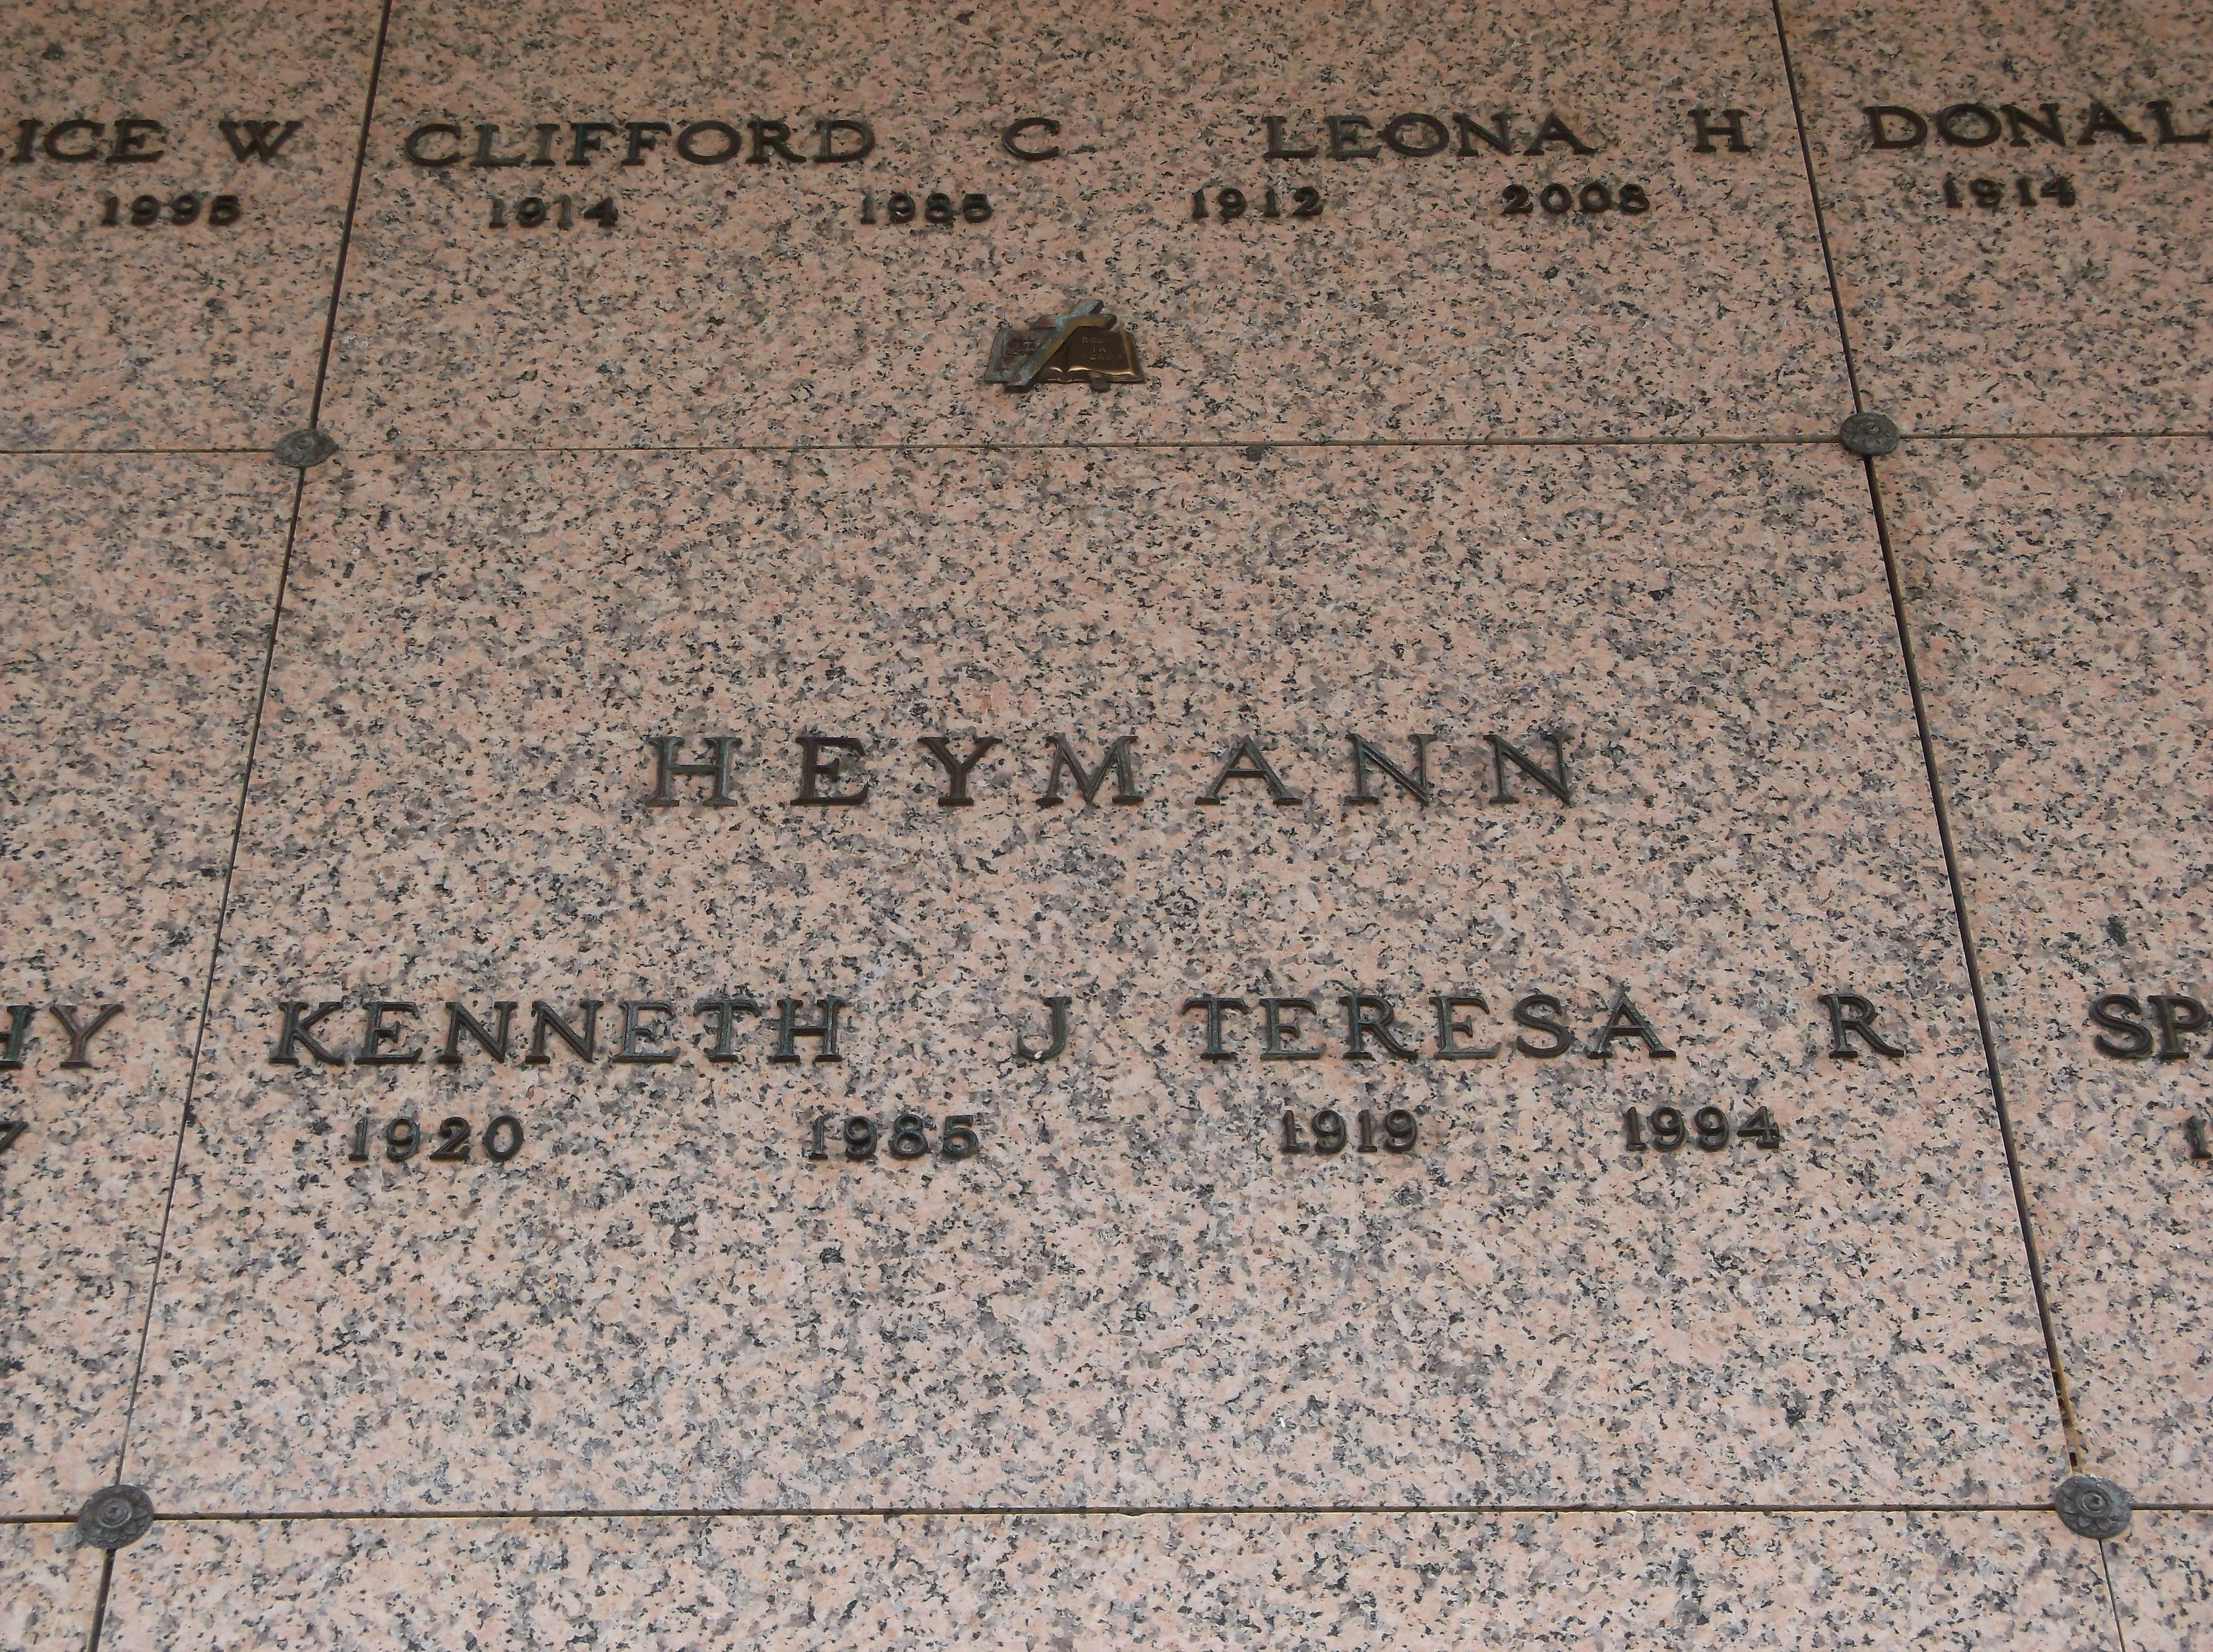 Kenneth J Heymann